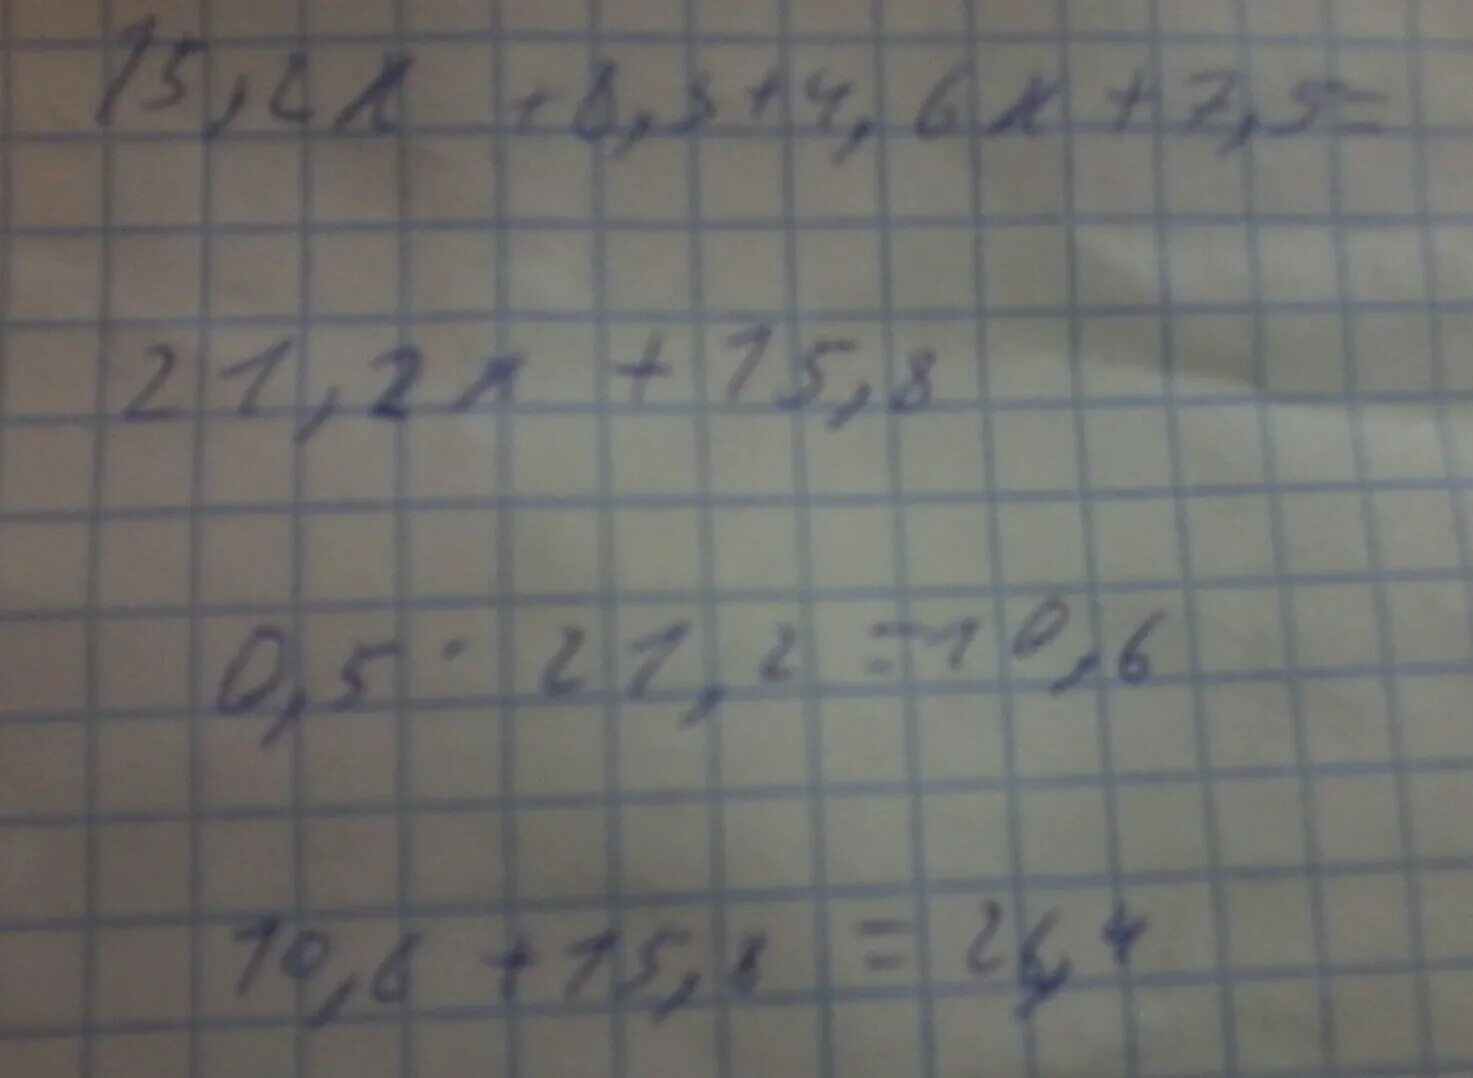 7.5X+4.6X-3.7X при x = 0.01. 6x 8y при x 2/3 y 5/8 решение. X-6y^2 + 3y при x -8 y 0,1. -2(3.5Y-2.5) + 4.5Y-1 при y 4.5.